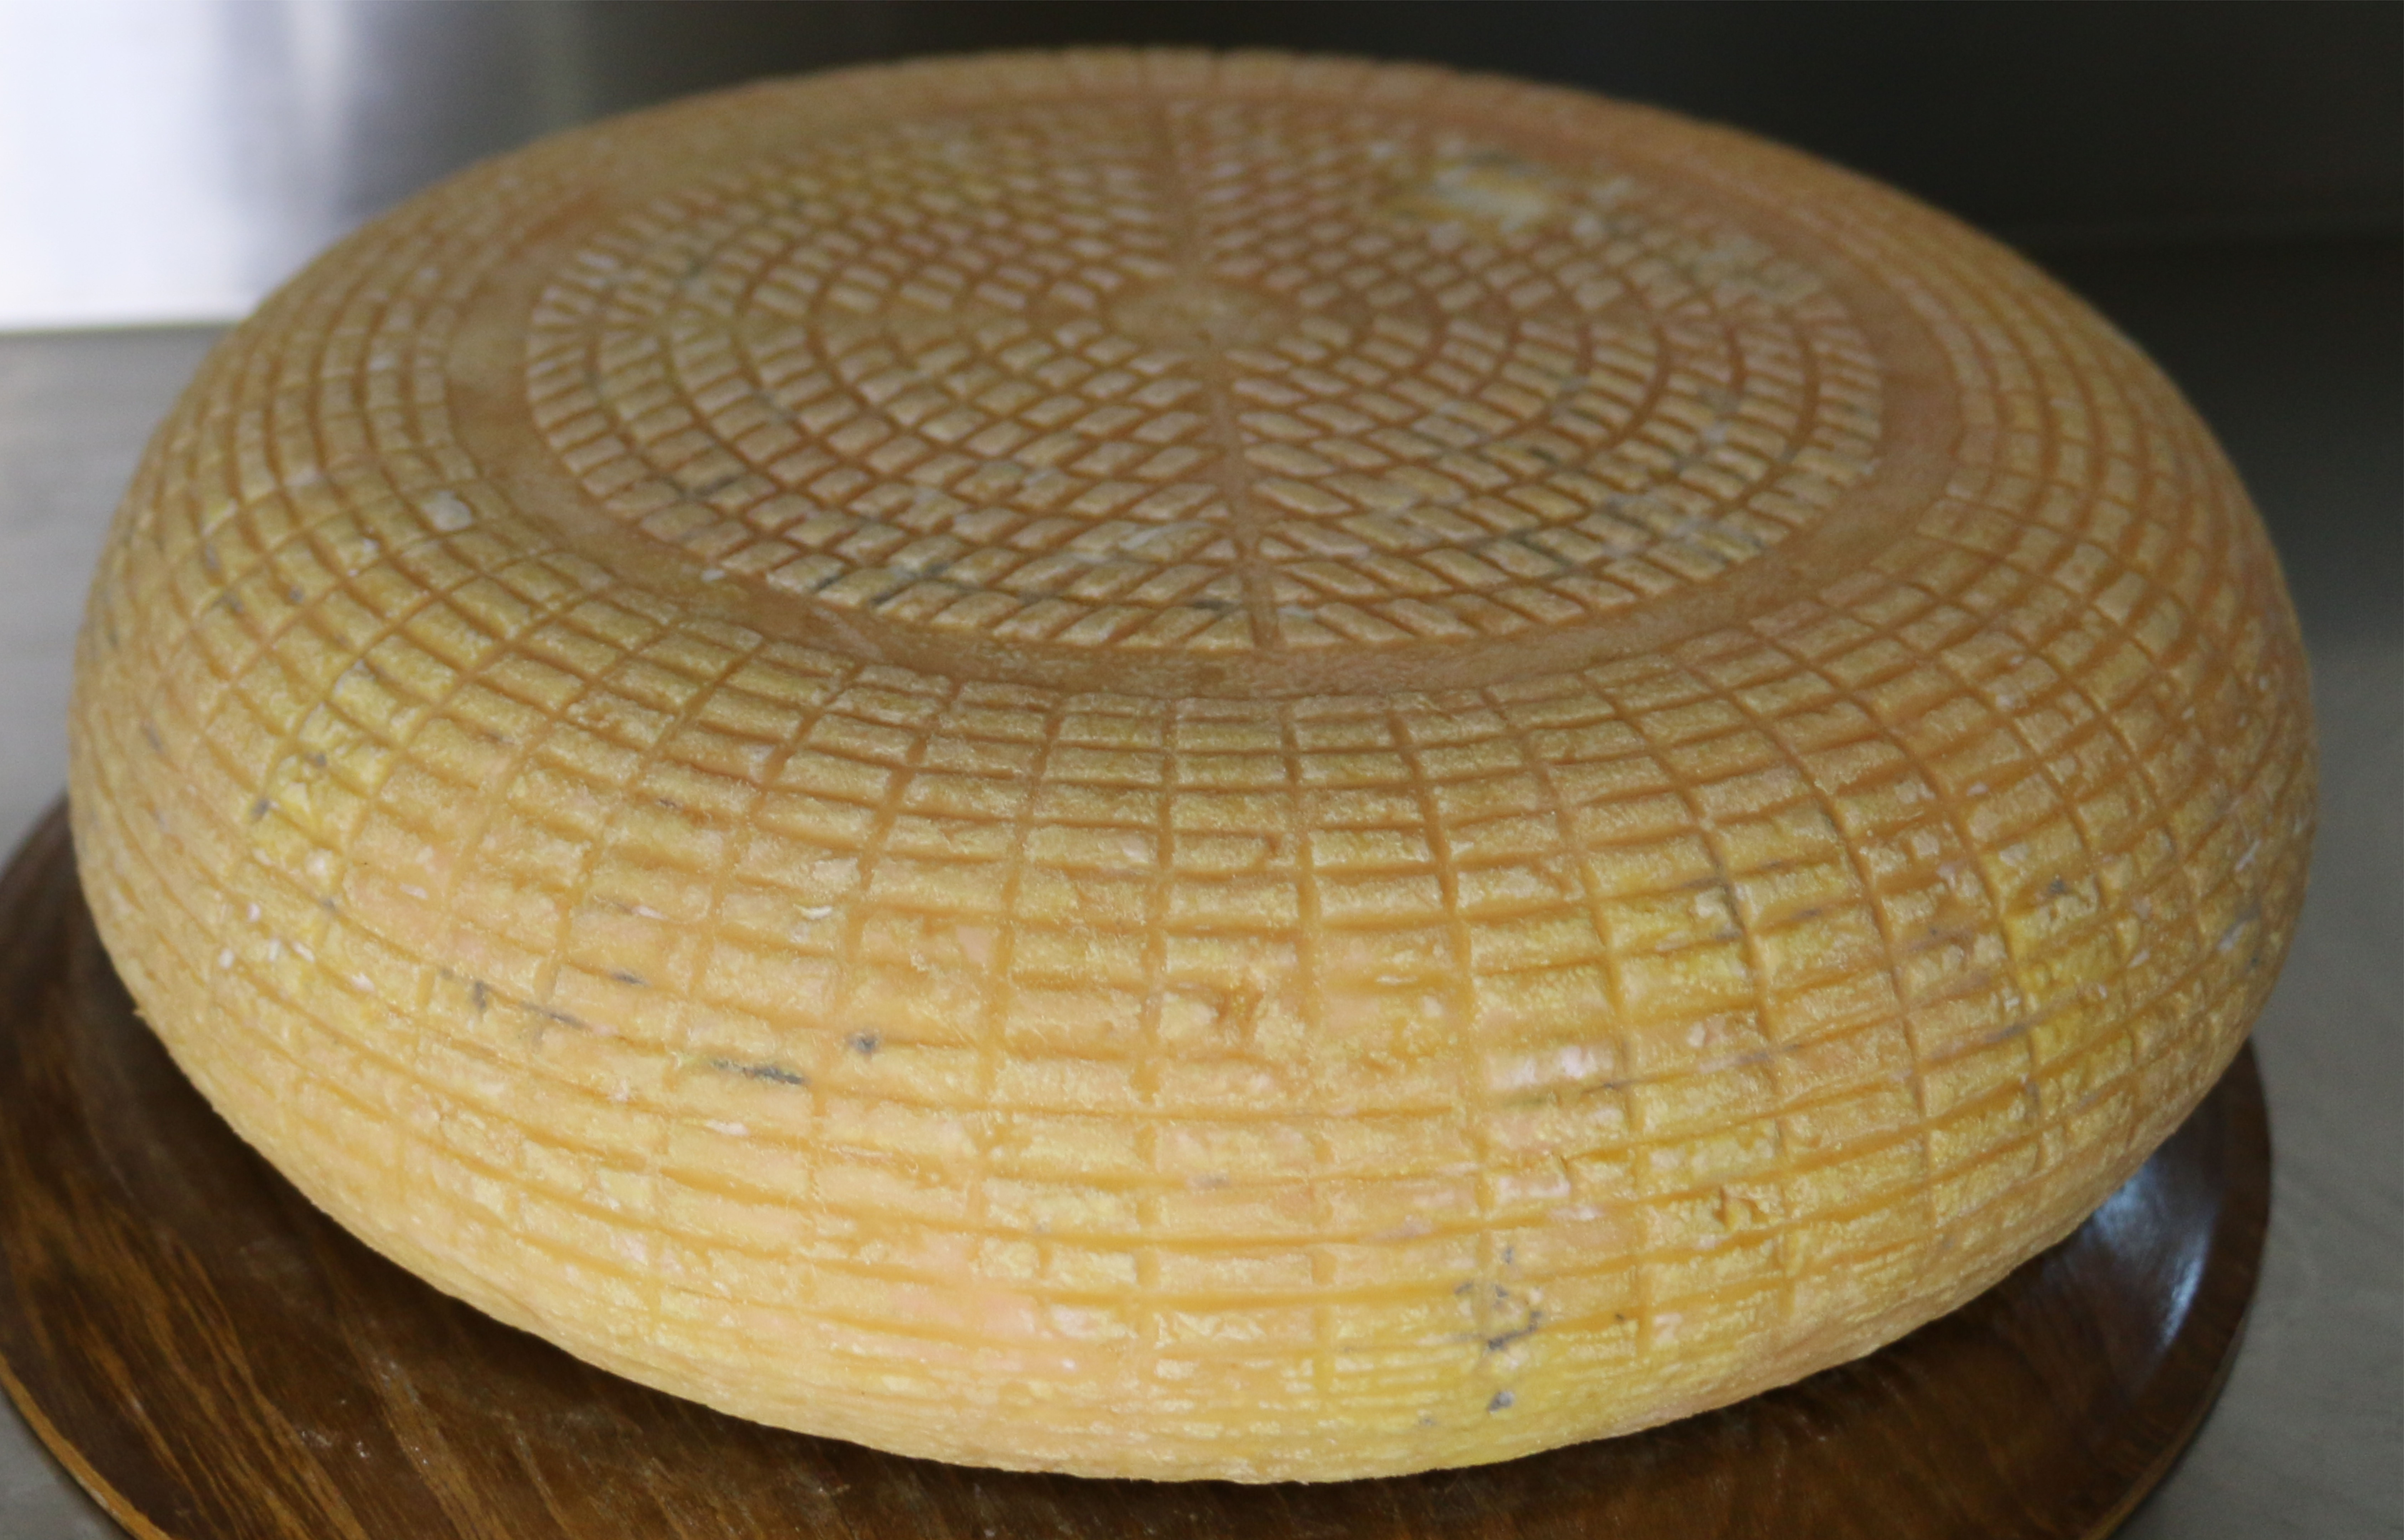 Munster / Meunster Cheese